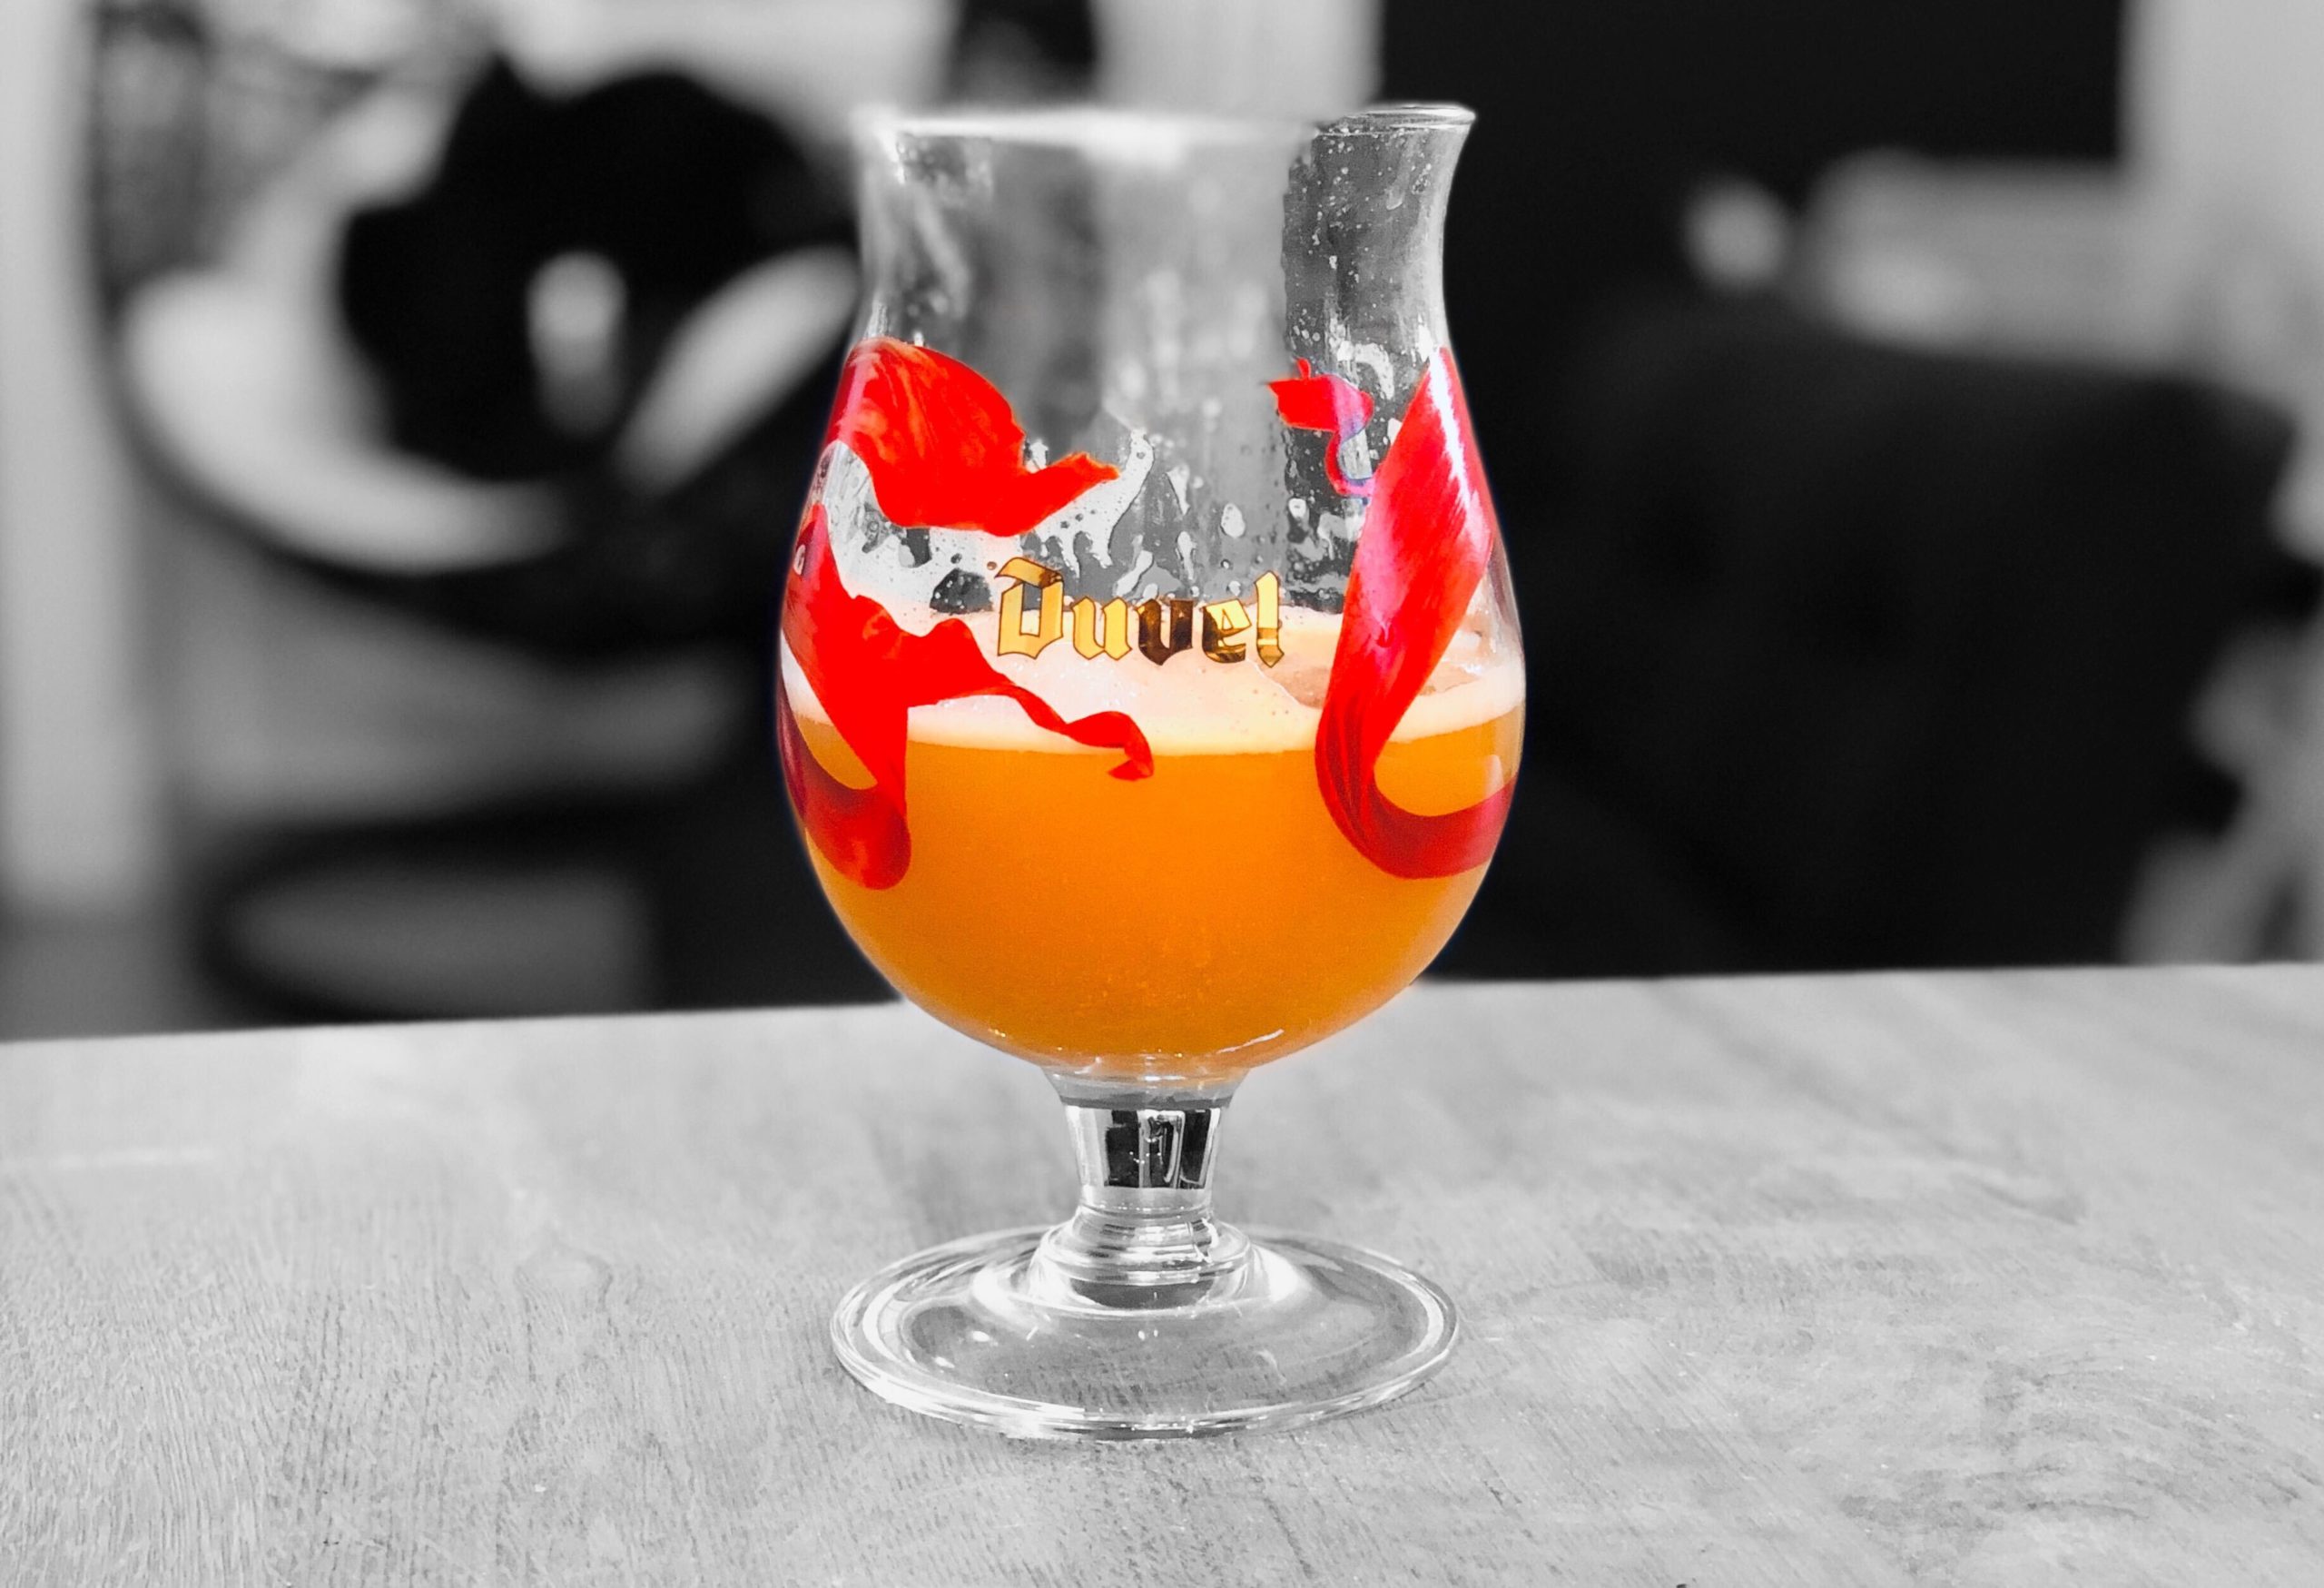 Bière belge : histoire et origines